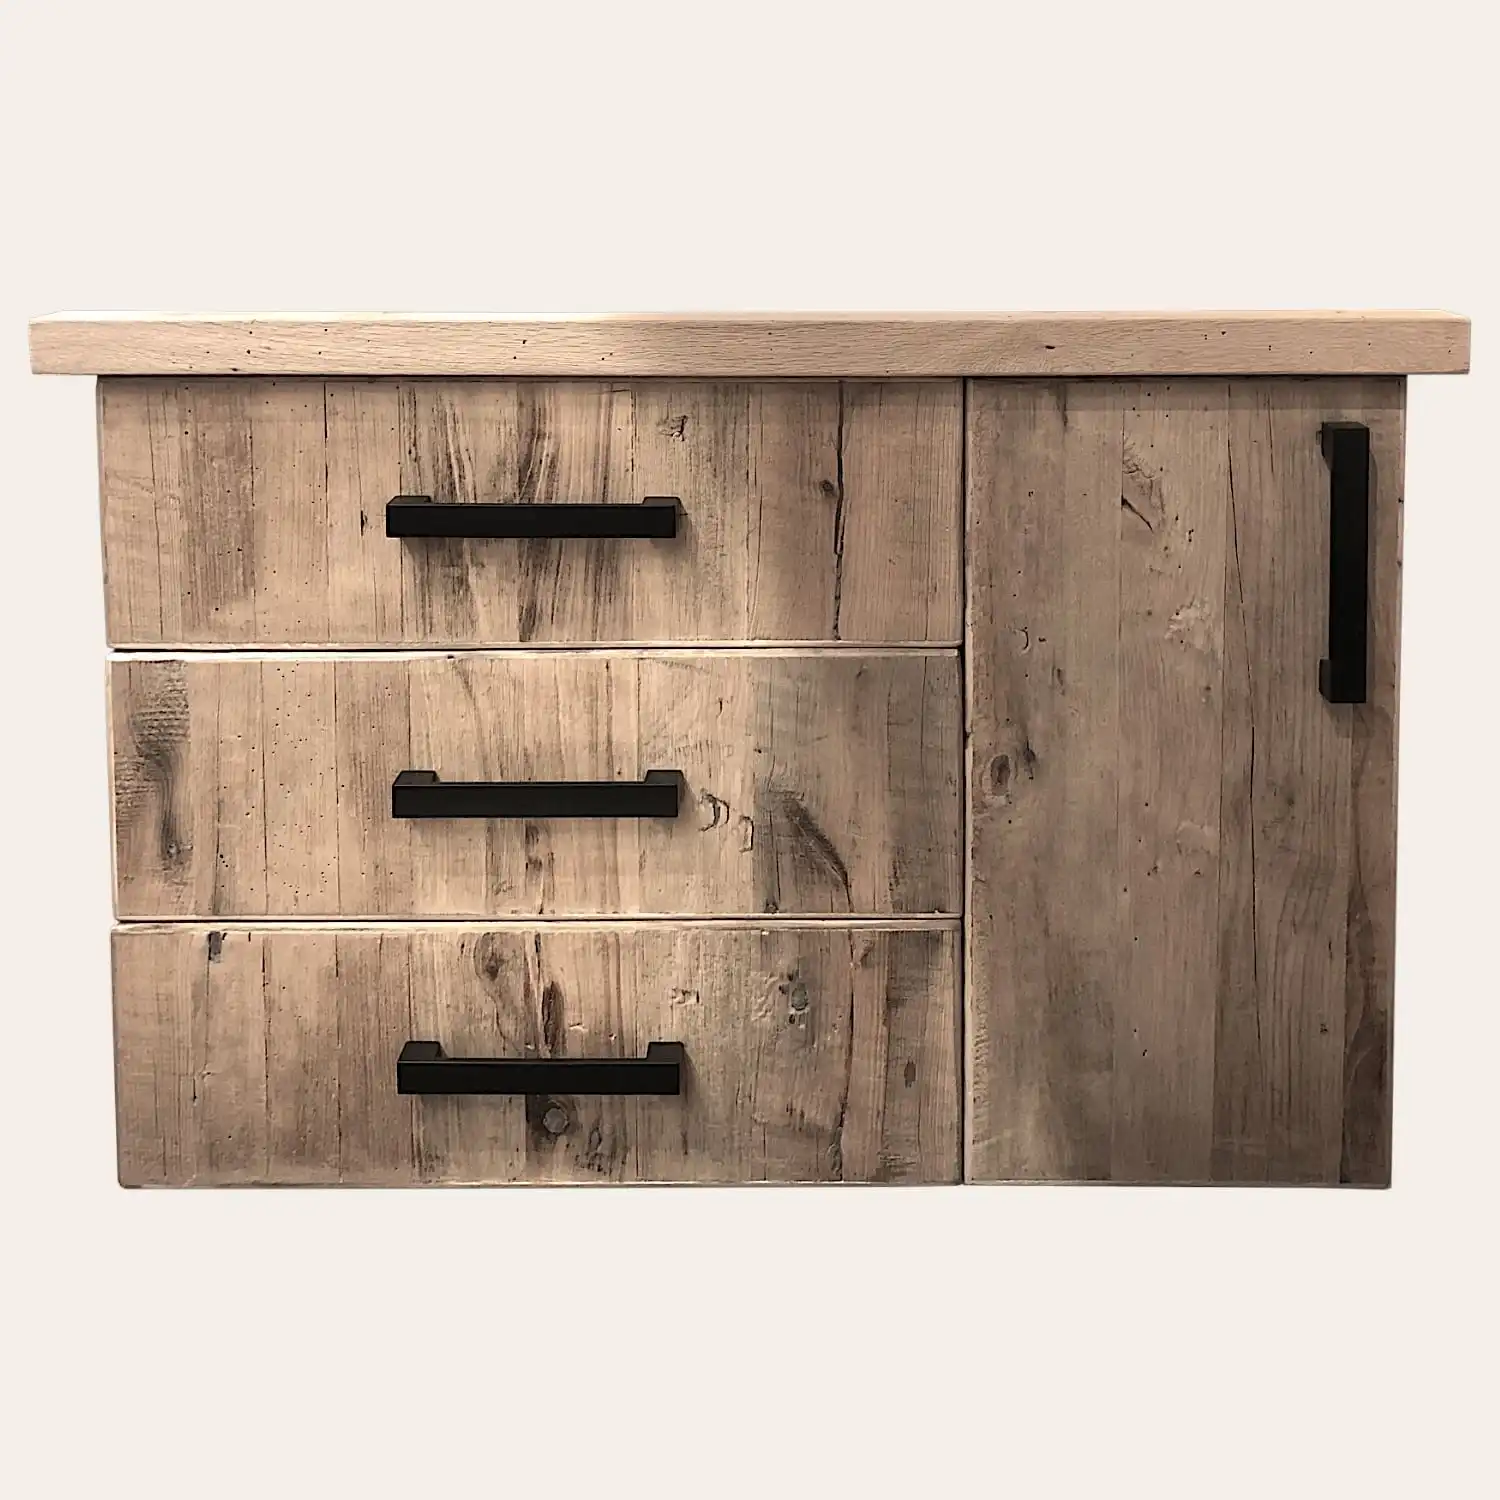  Une étagère flottante en bois comportant trois tiroirs avec des poignées horizontales noires sur un fond neutre, fabriquée à partir de panneaux vieux bois. 